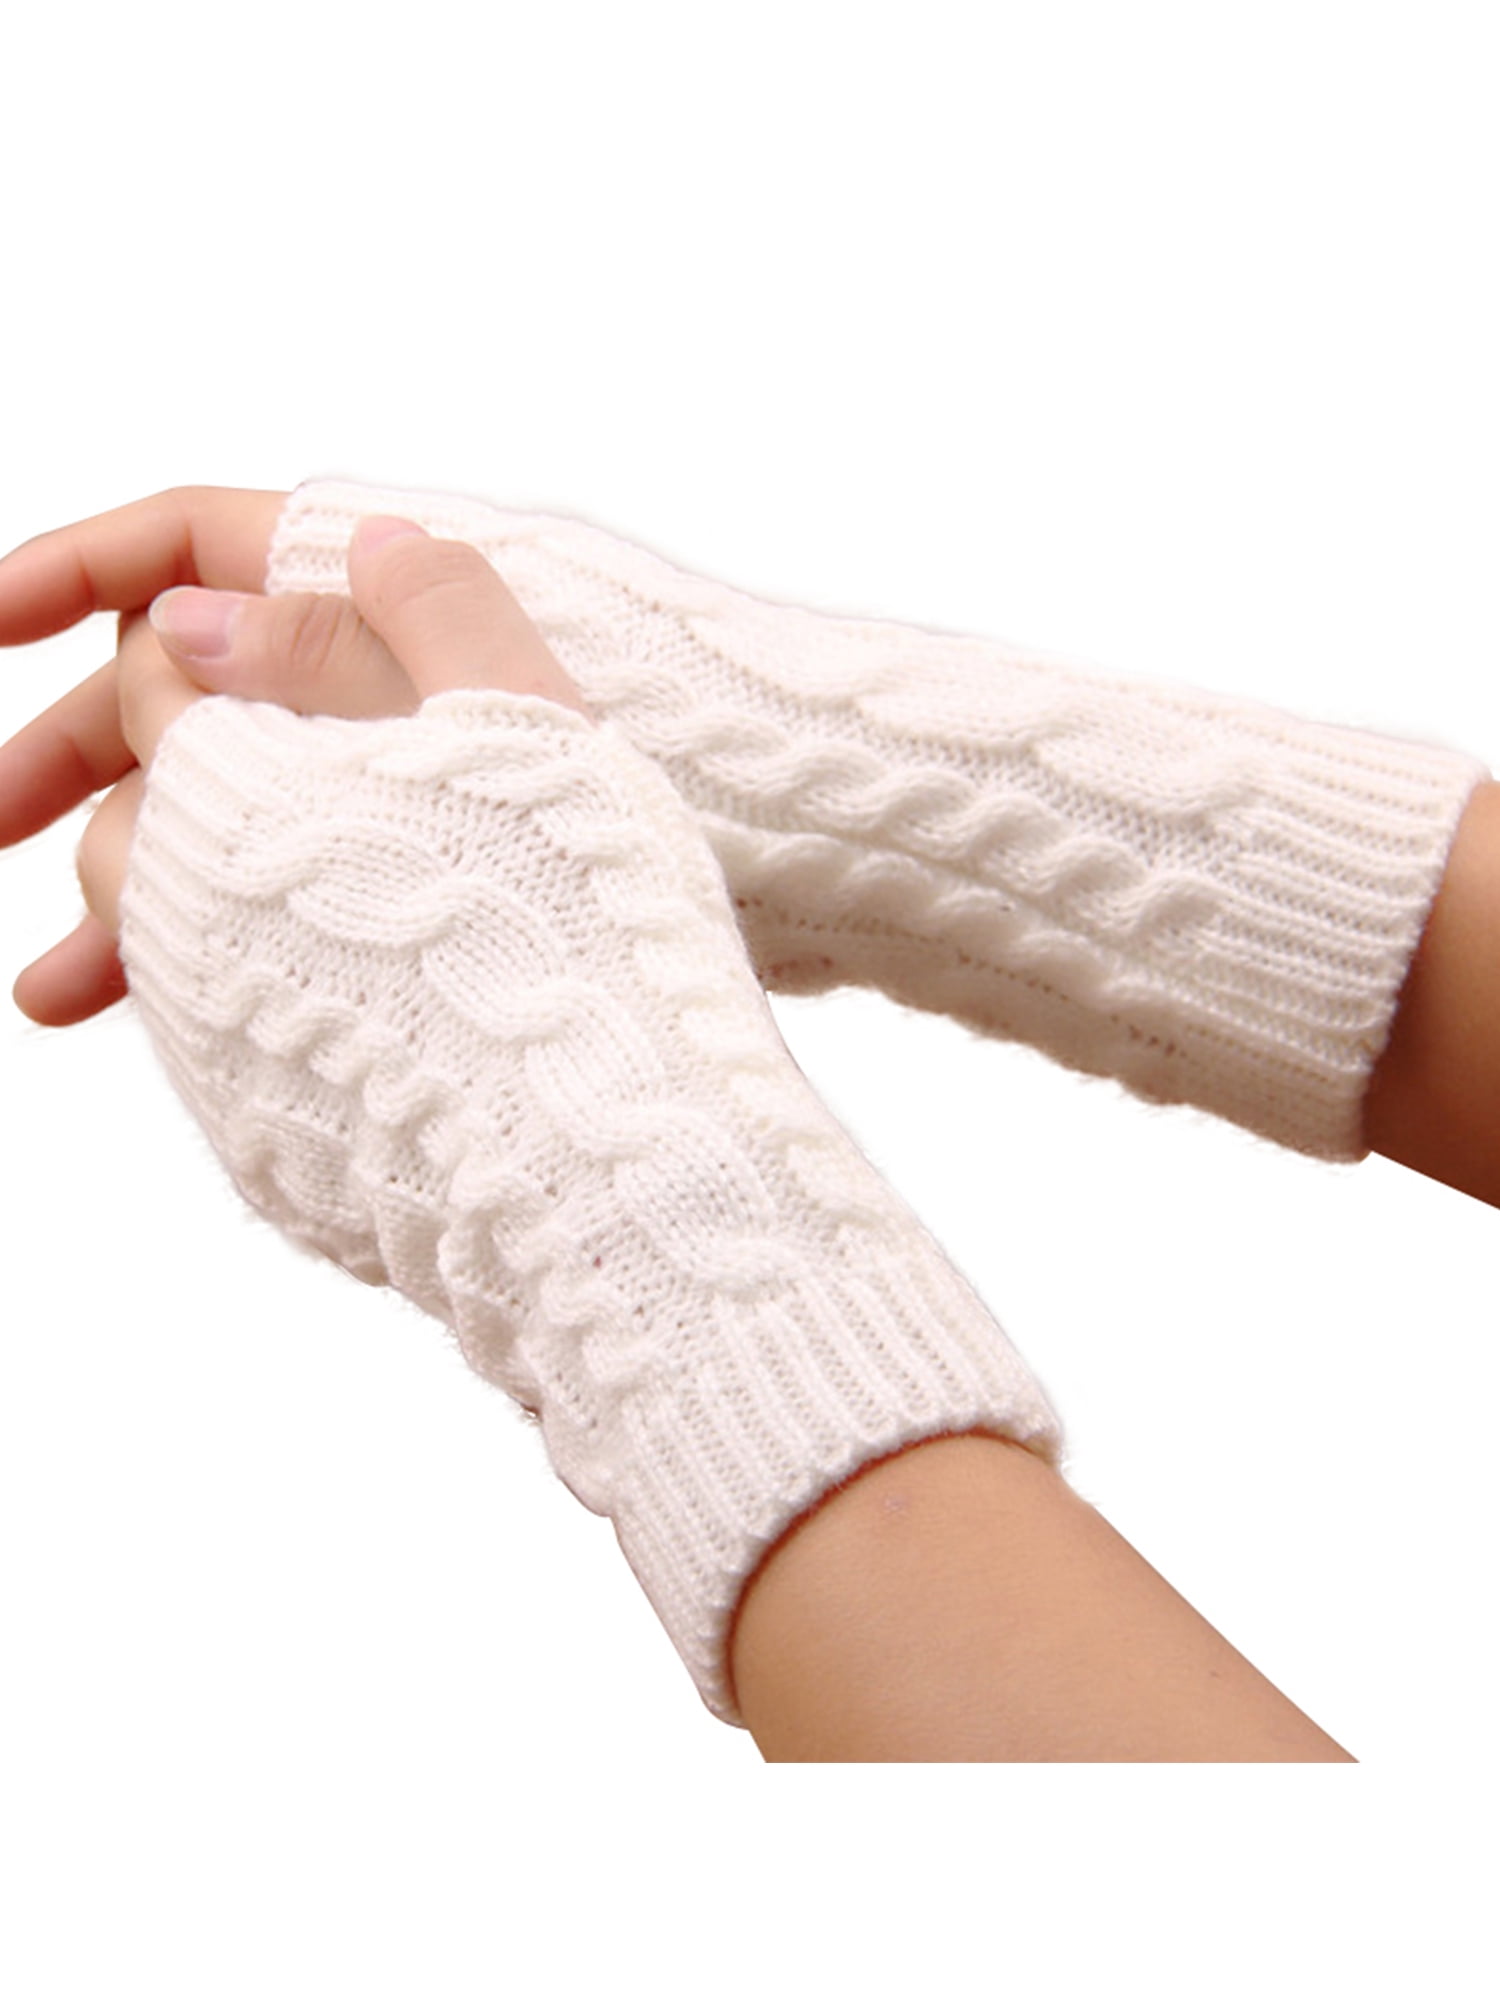 Women's Knitted Fingerless Mitten Thumb Hole Wrist Hand Warmer Winter ...